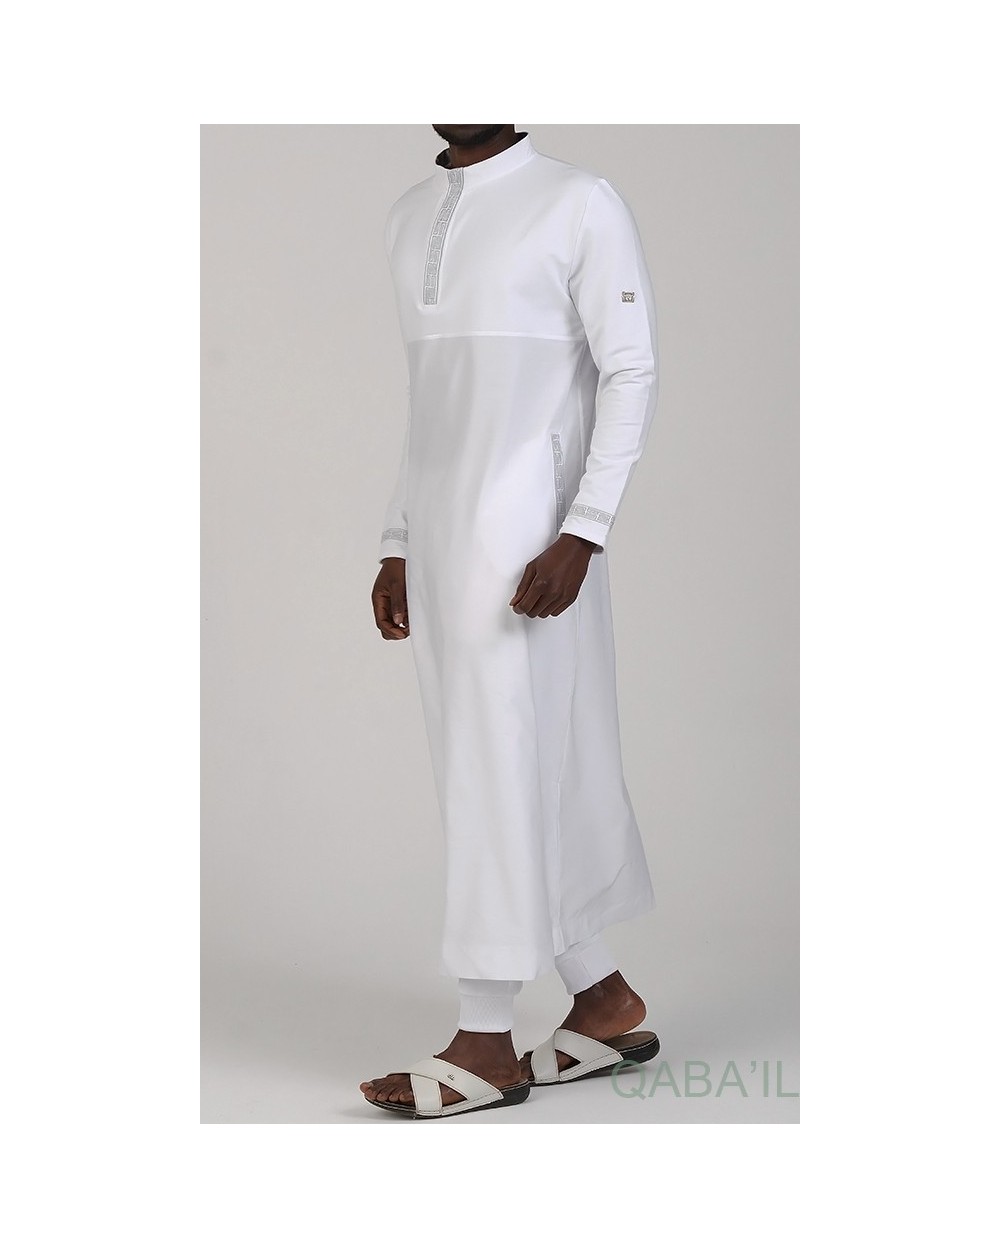 Qabail  Marque de vêtements conçu pour les musulmans